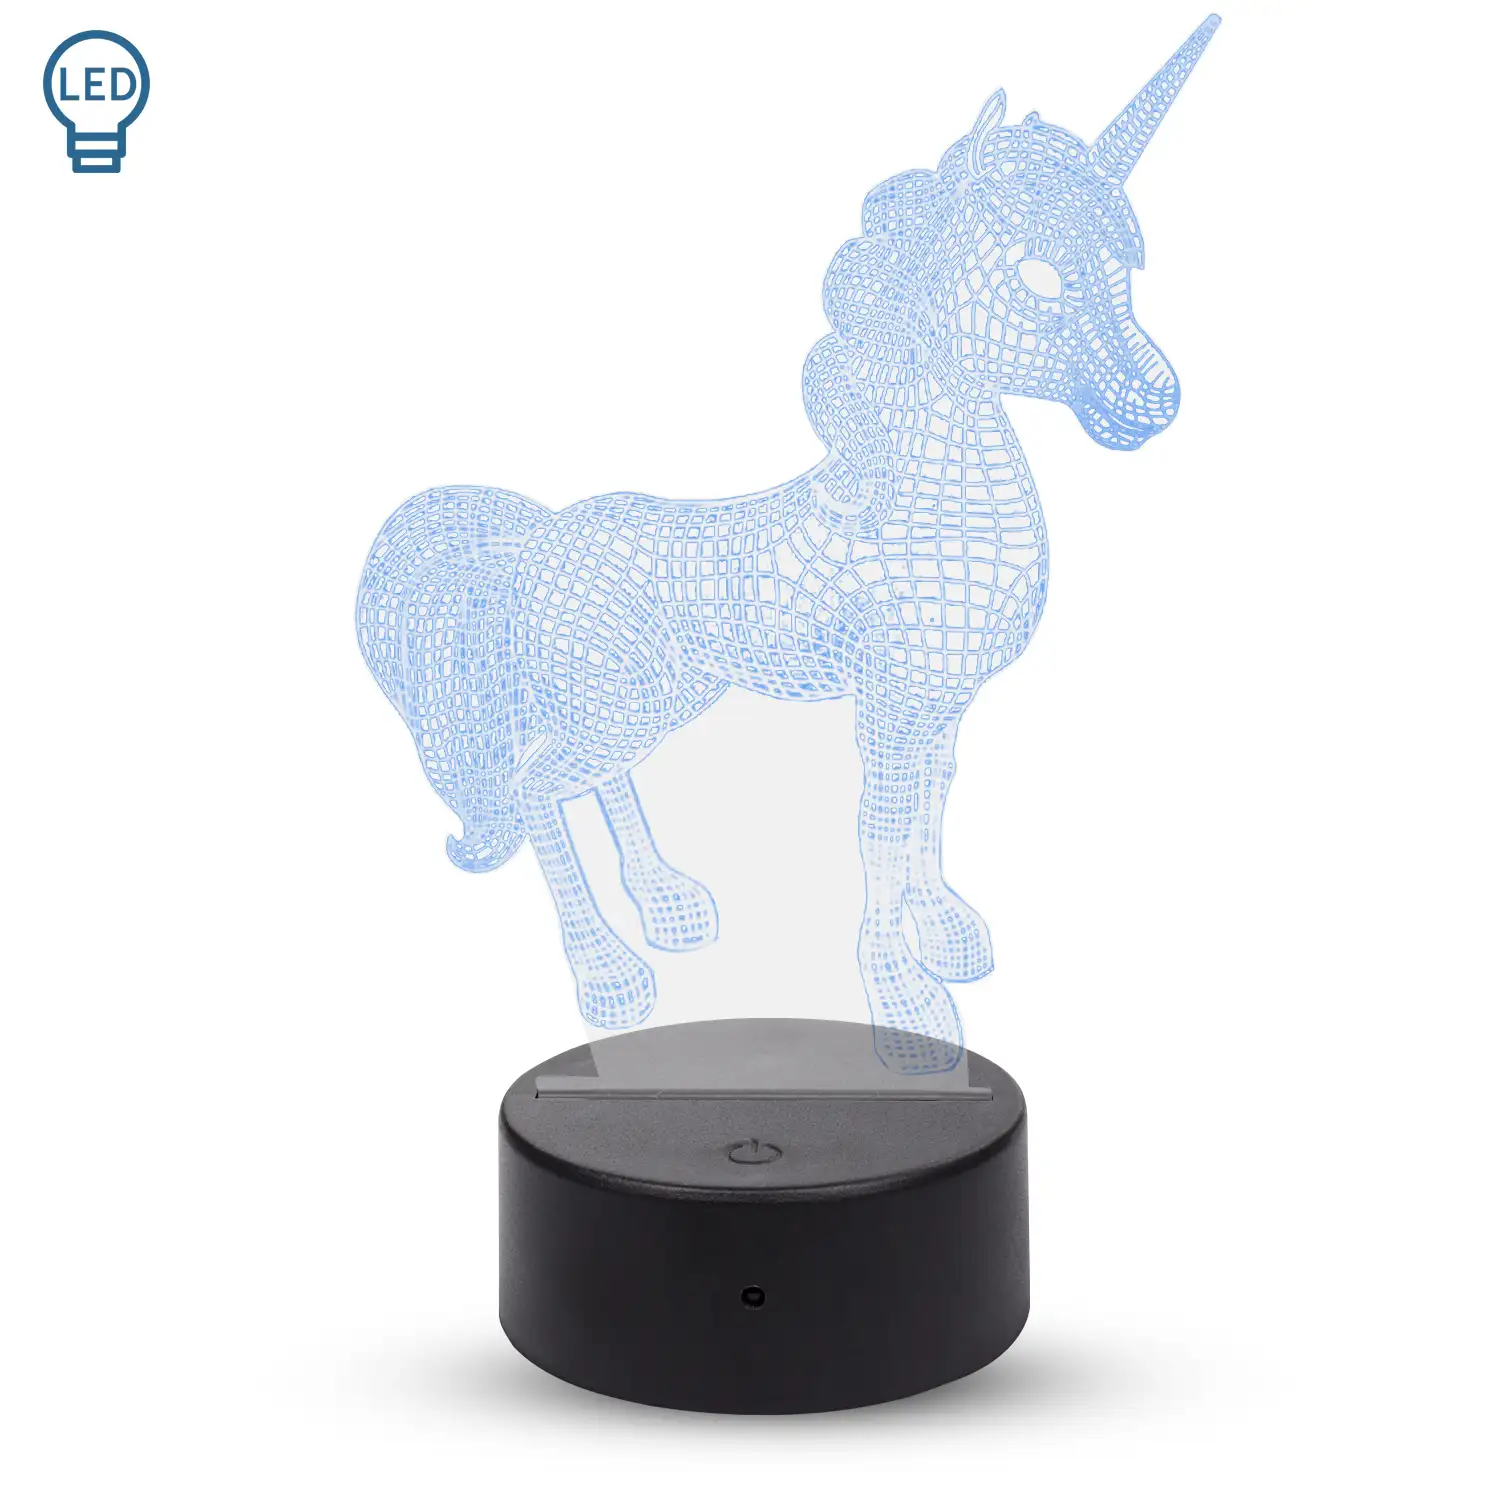 Lámpara ambiental efecto 3D, diseño Unicornio. Luces RGB intercambiables, con efectos y mando a distancia.